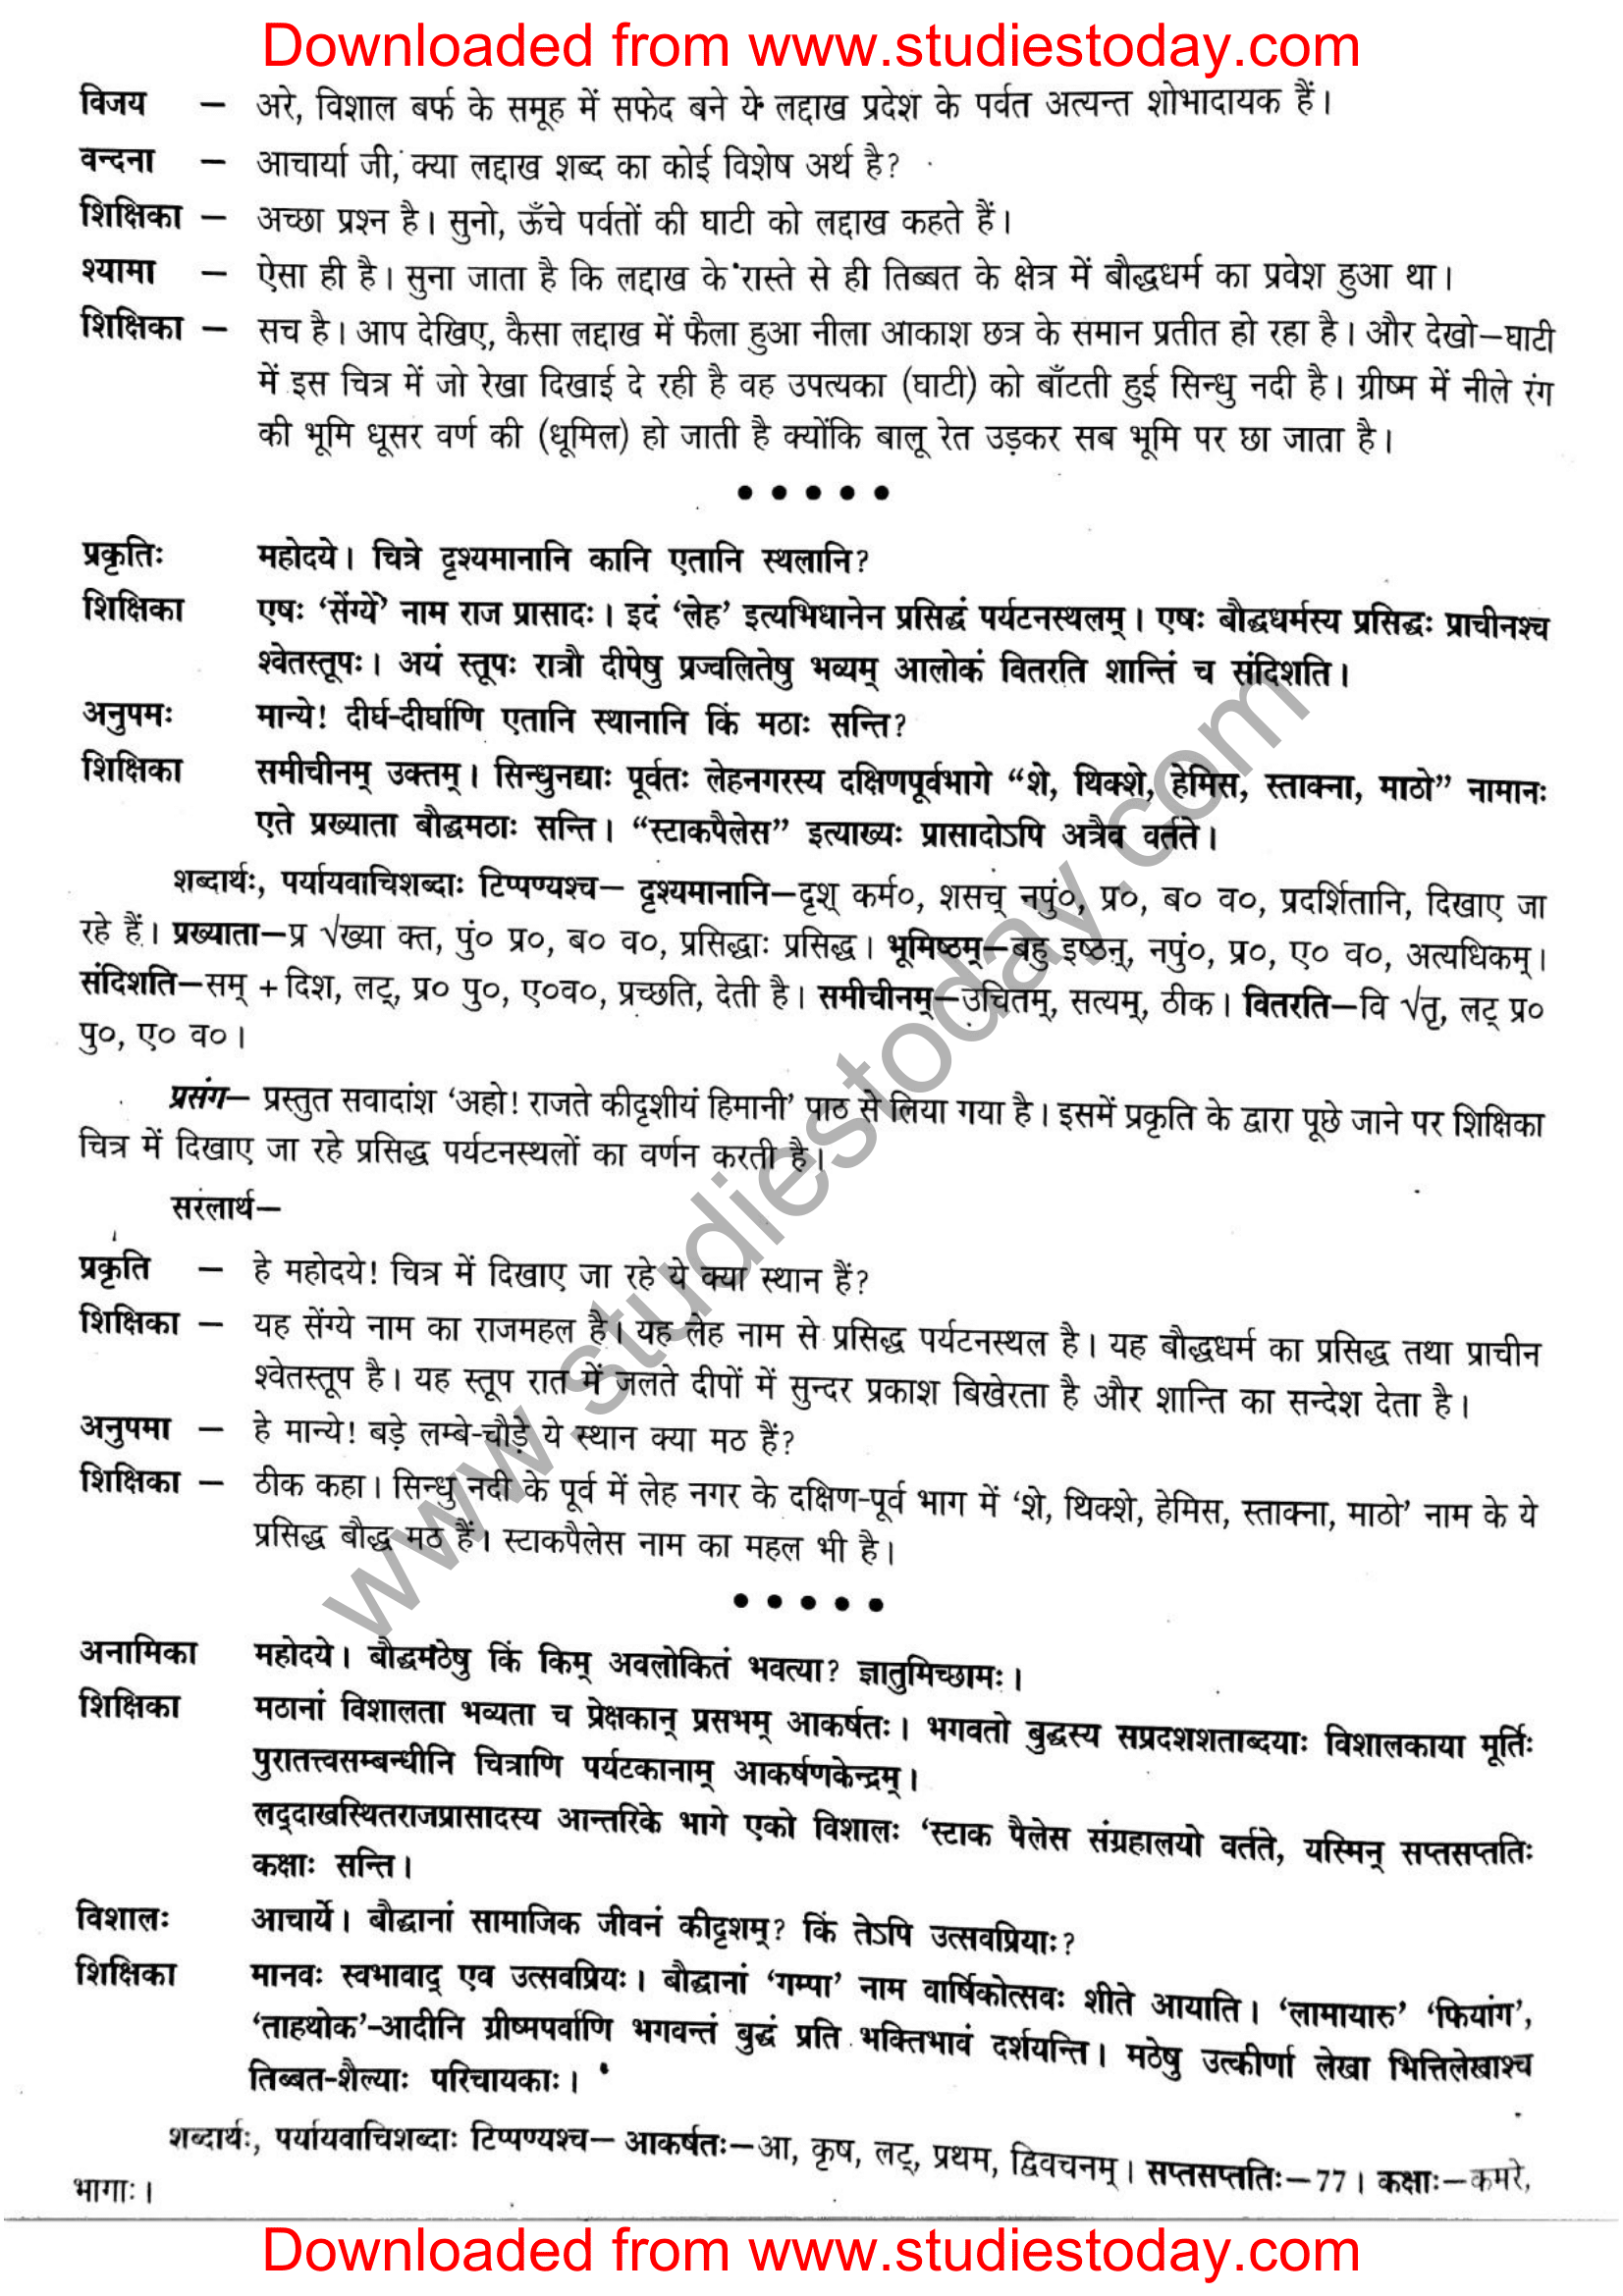 ncert-solutions-class-12-sanskrit-ritikia-chapter-5-03